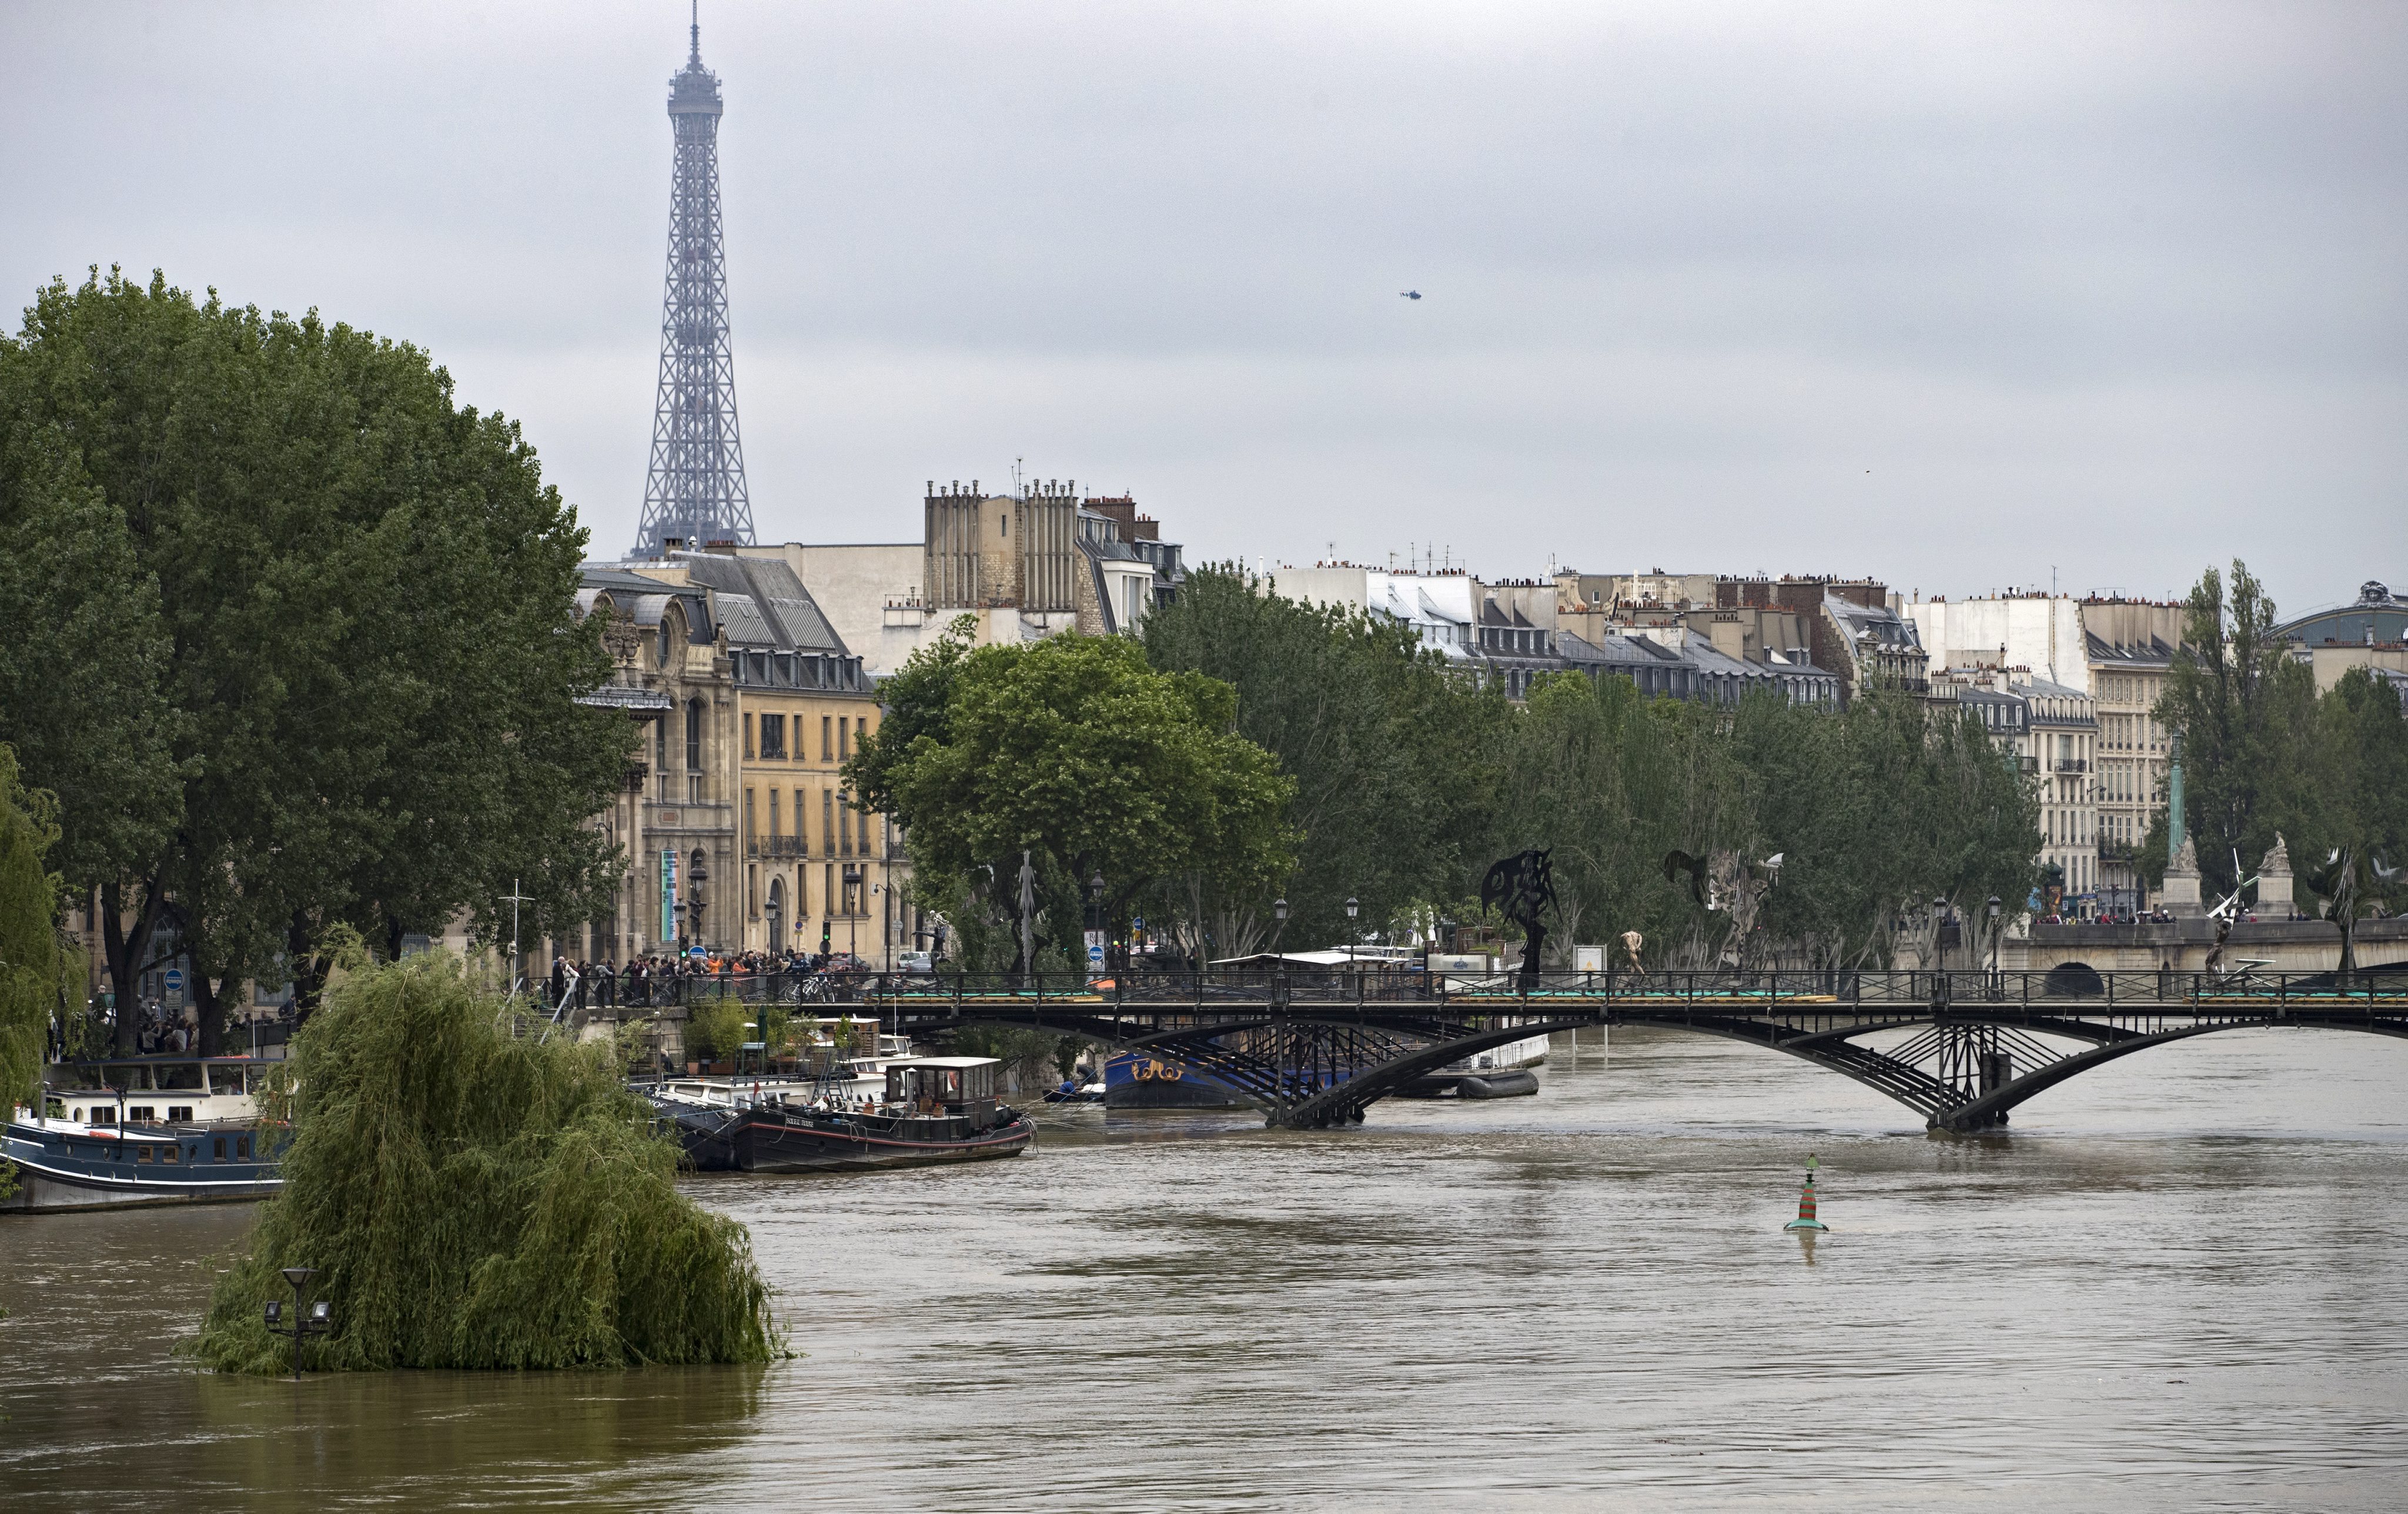  Inundación por desbordamiento del río Sena obliga a evacuar museos en París